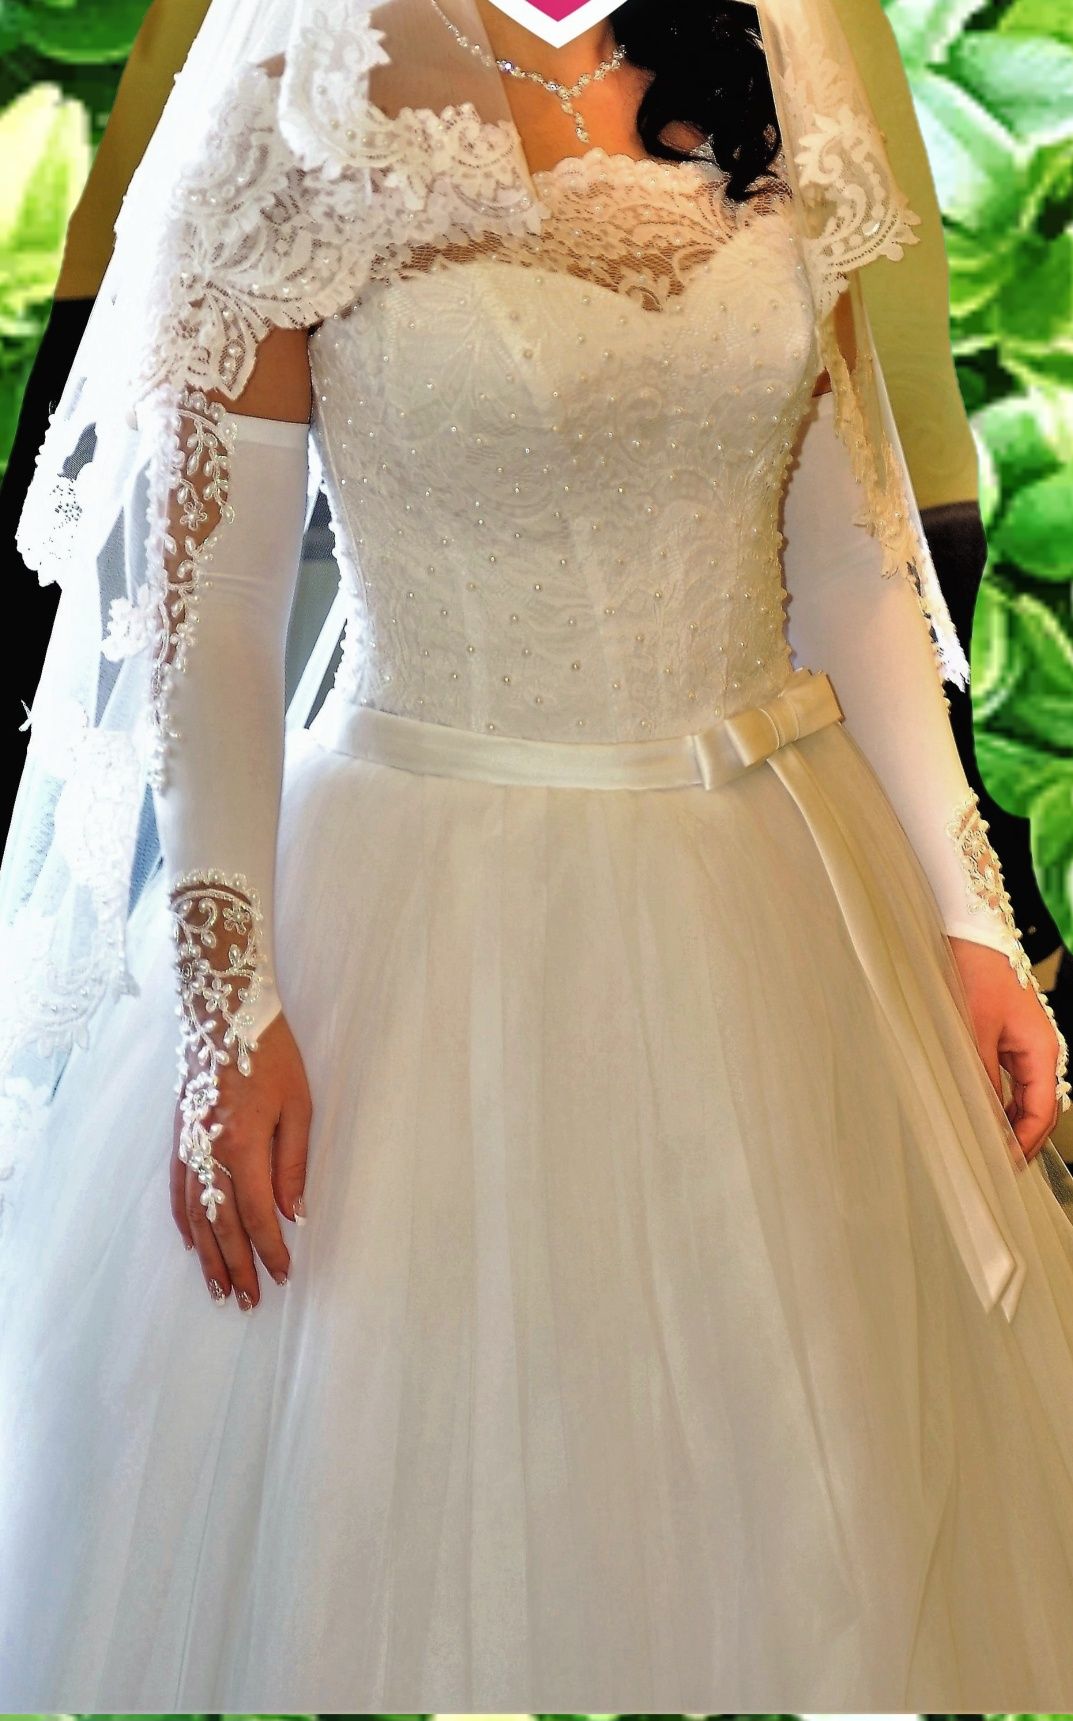 Свадебное платье в идеальном состоянии, аккуратное вместе с кольцами